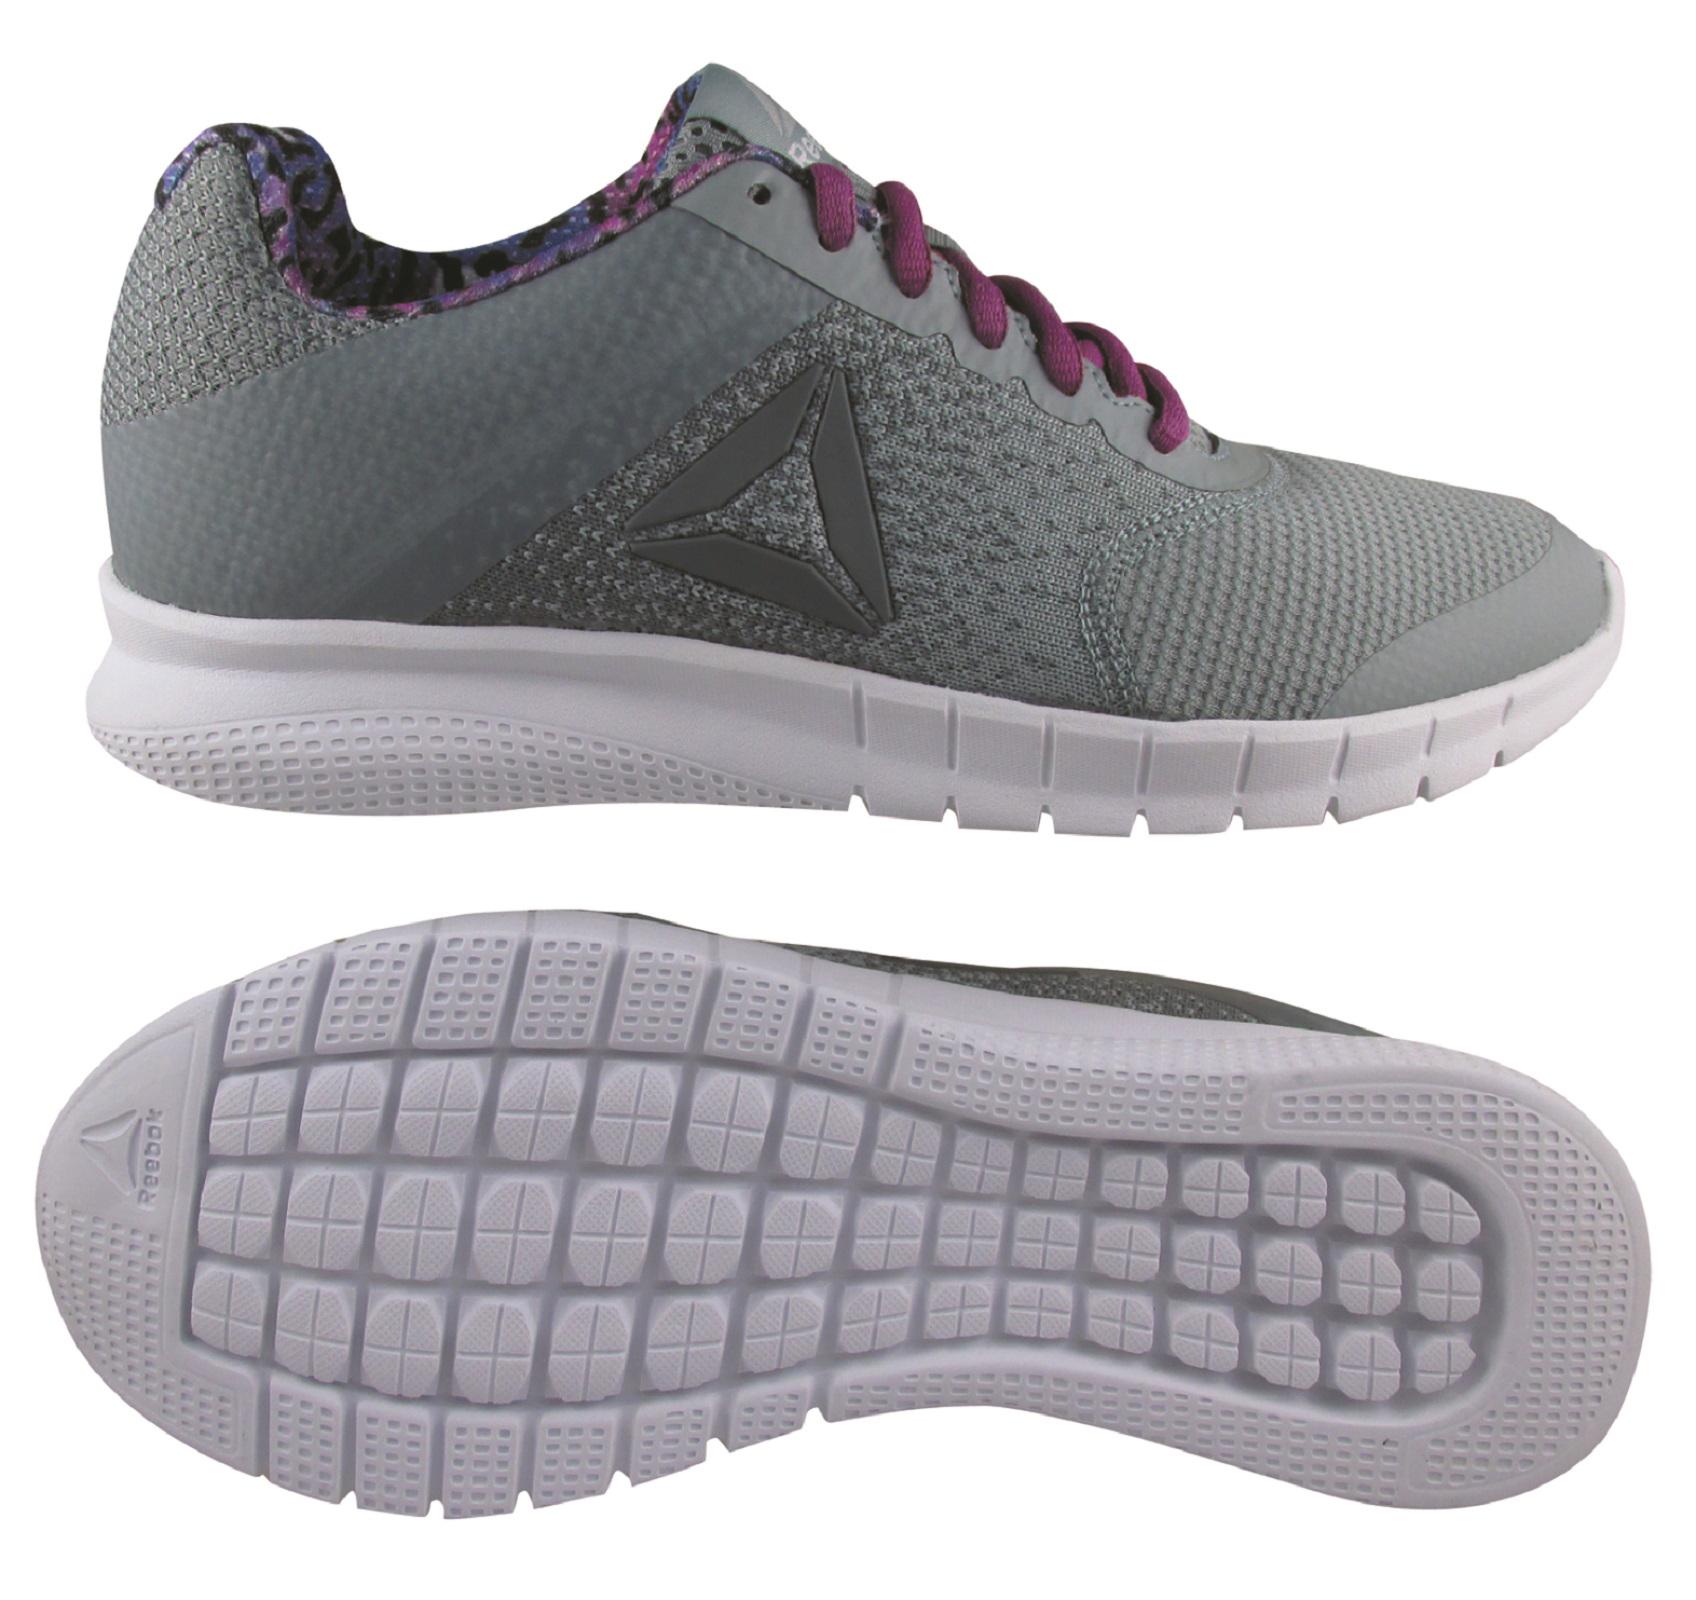 Reebok Women's Instalite Running Shoe - Gray